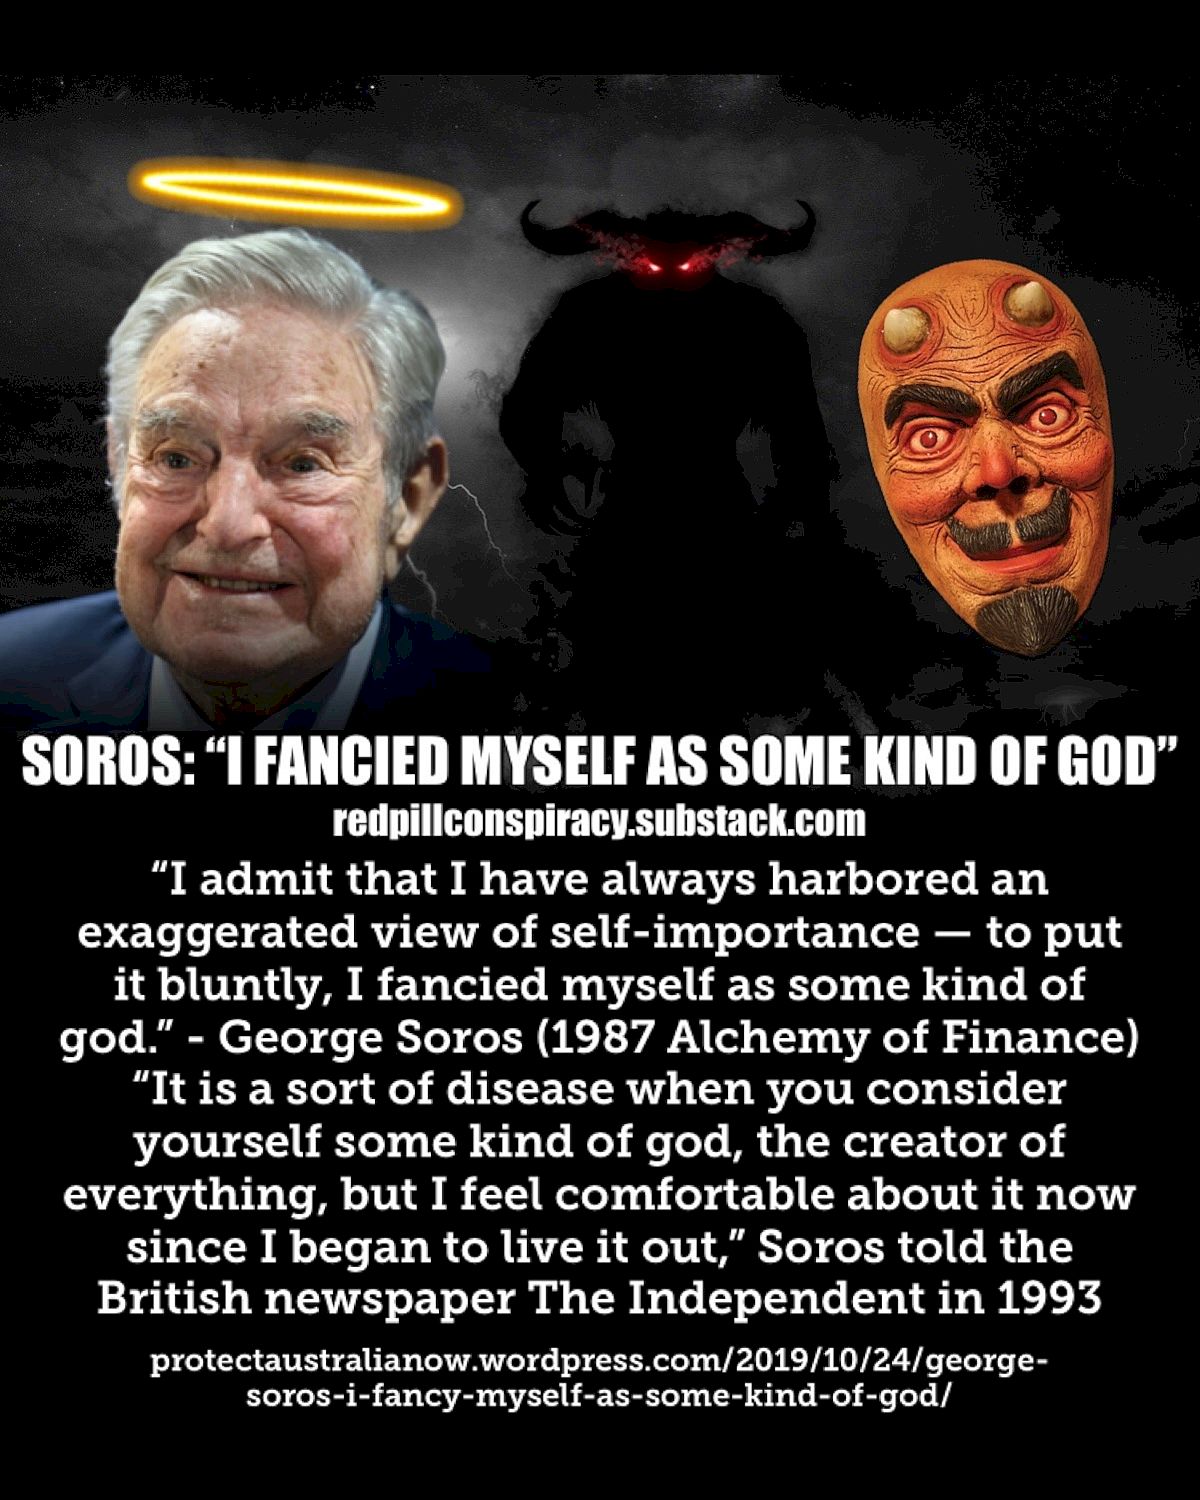 George Soros: "Mi pensis pri mi kiel ia dio"